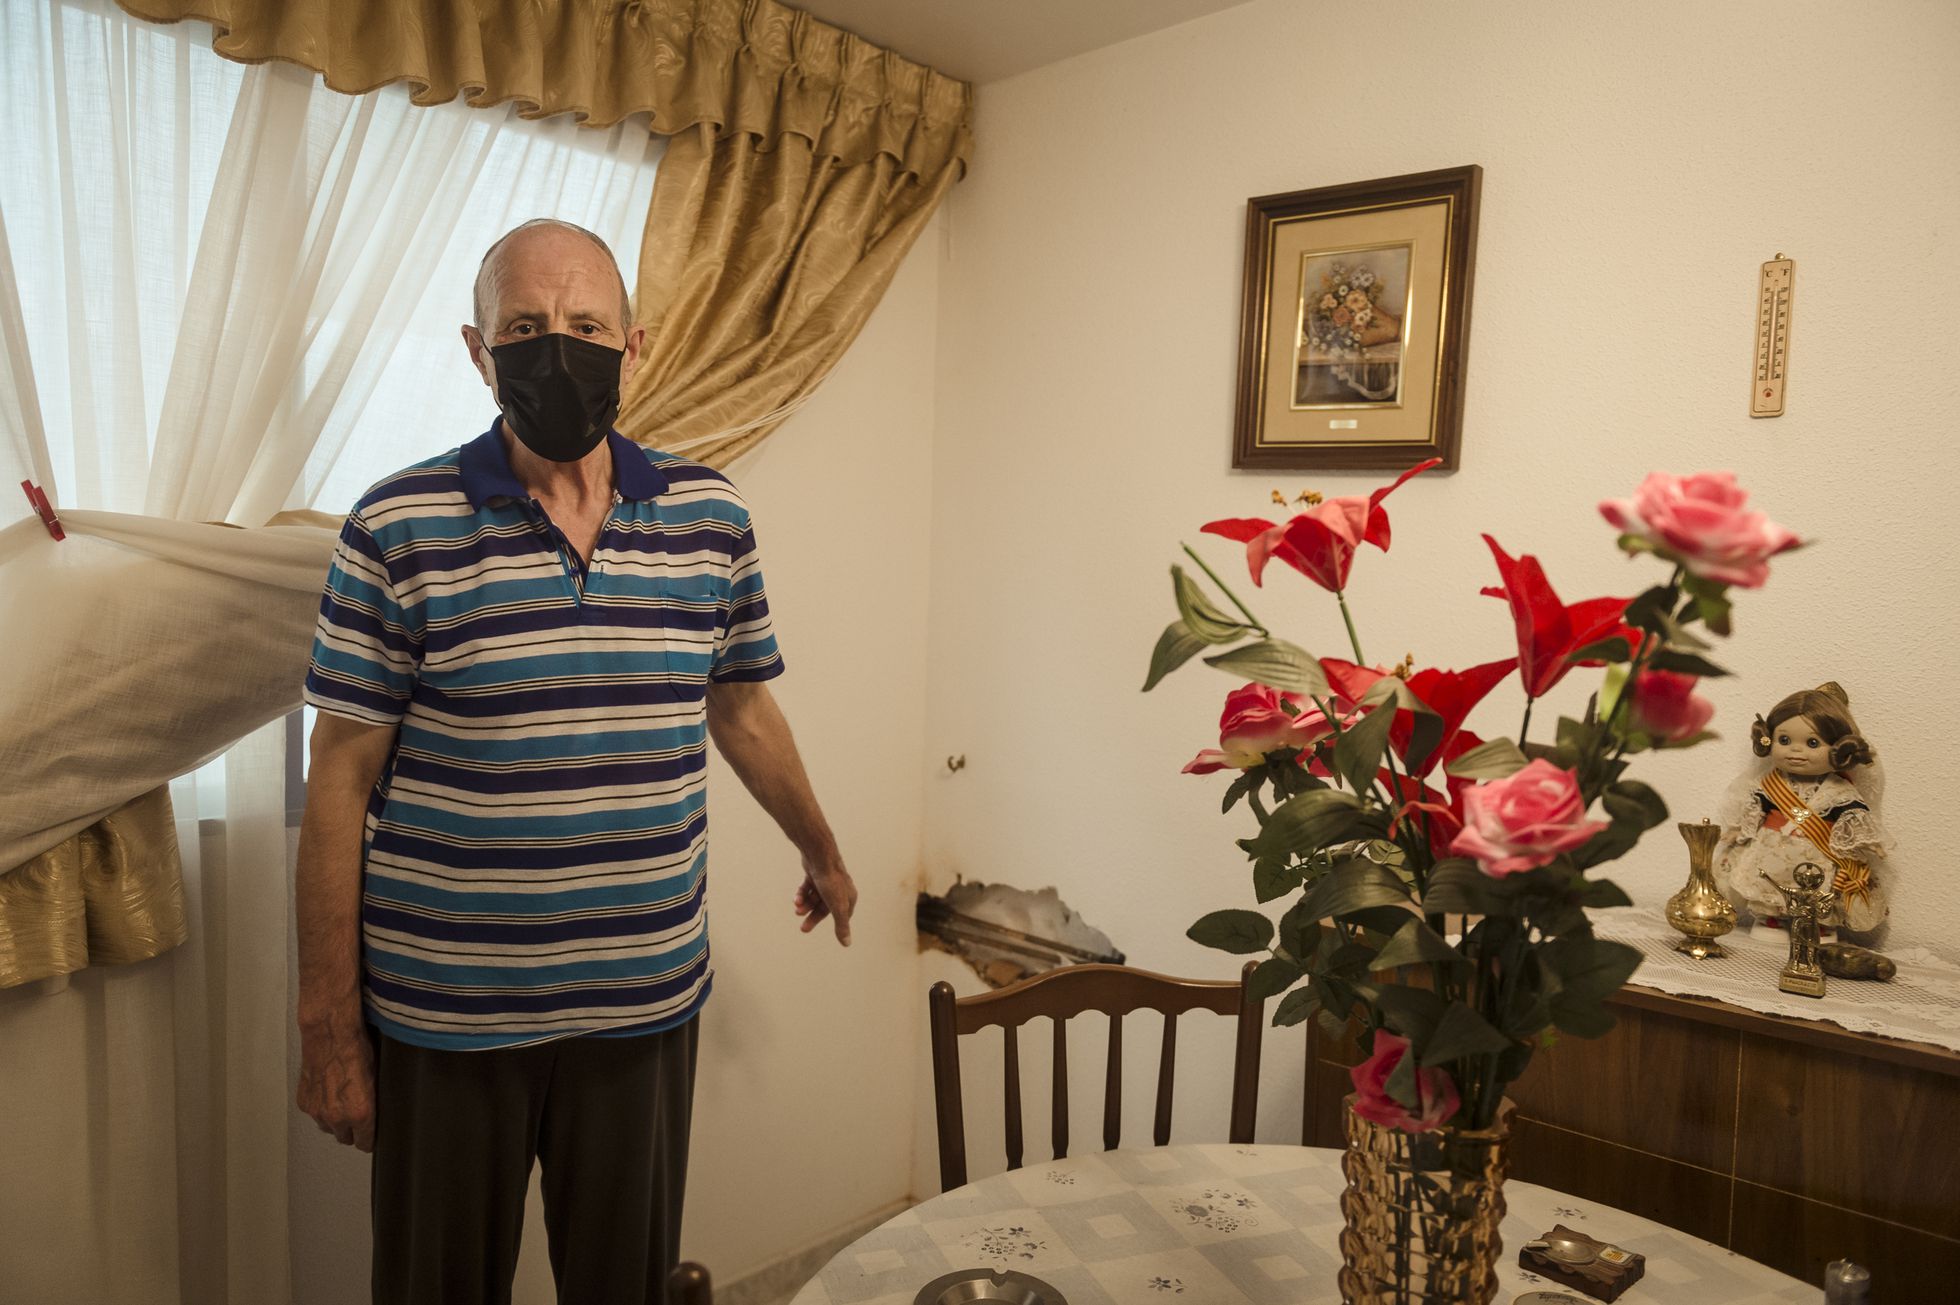 El zaragozano Antonio García, de 71 años, enseña uno de los desperfectos causados por Filomena en su casa de verano en Bello (Teruel).